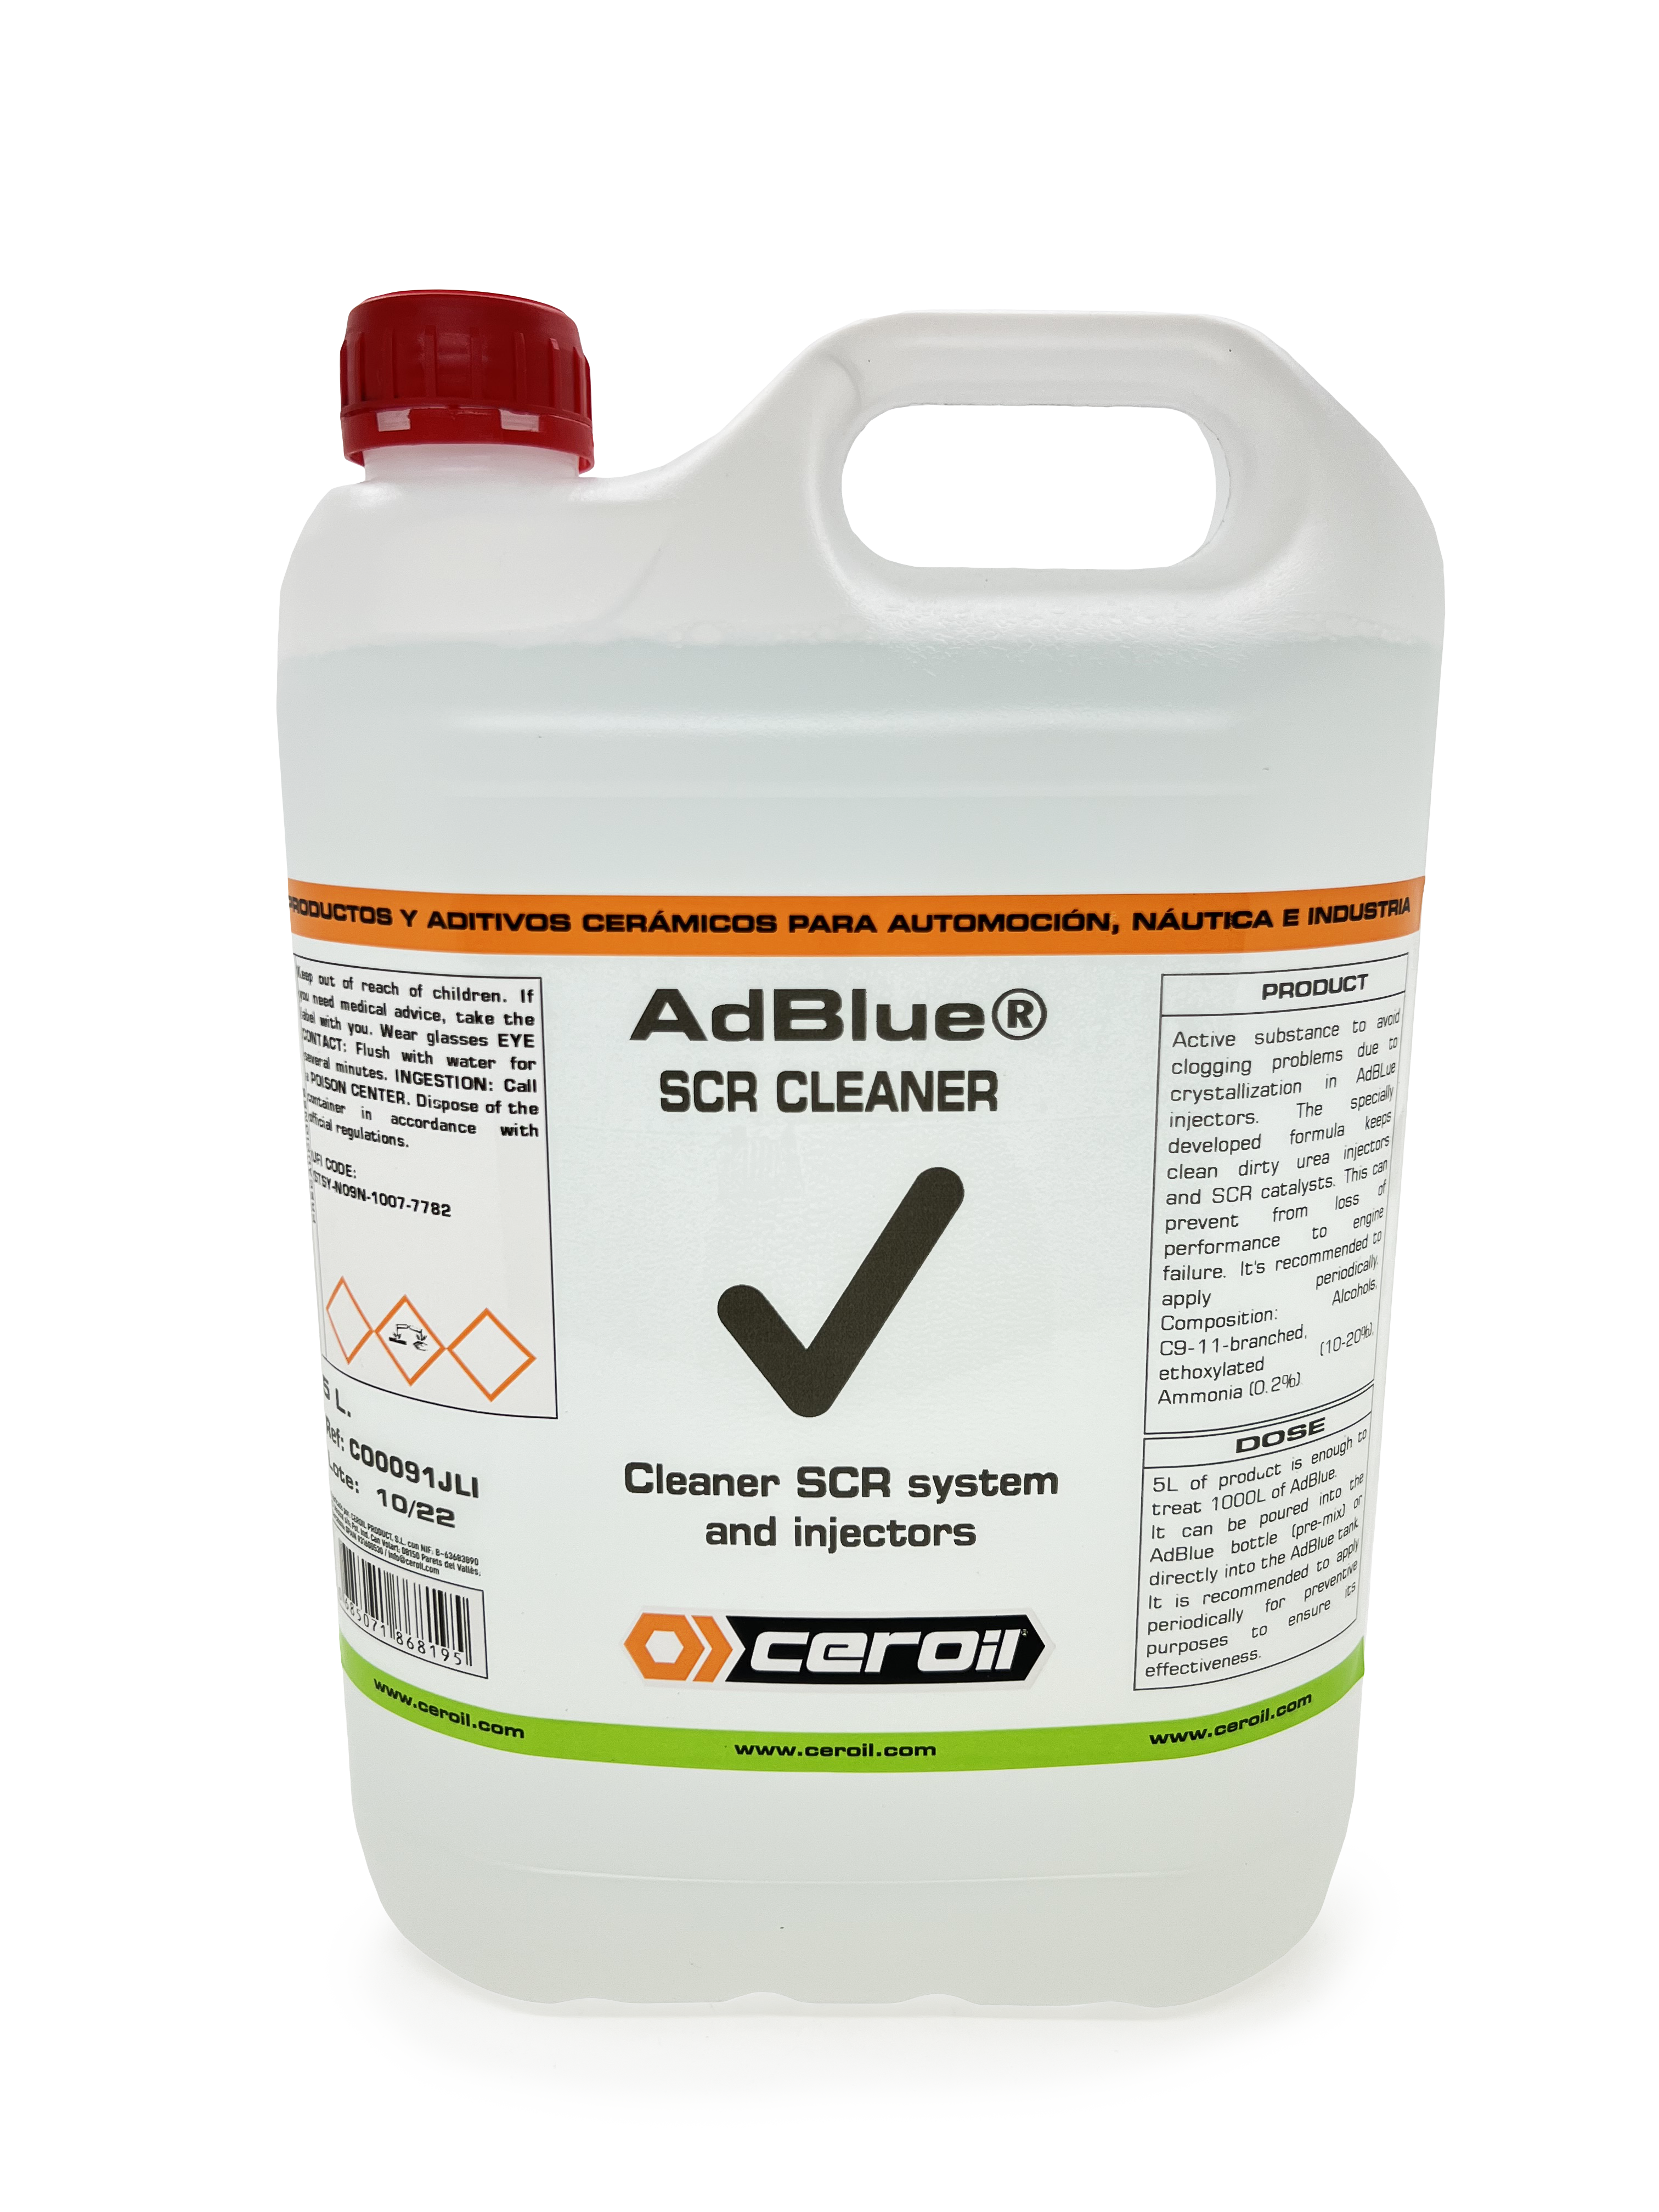 AdBlue. Comprar líquido Adblue para el coche